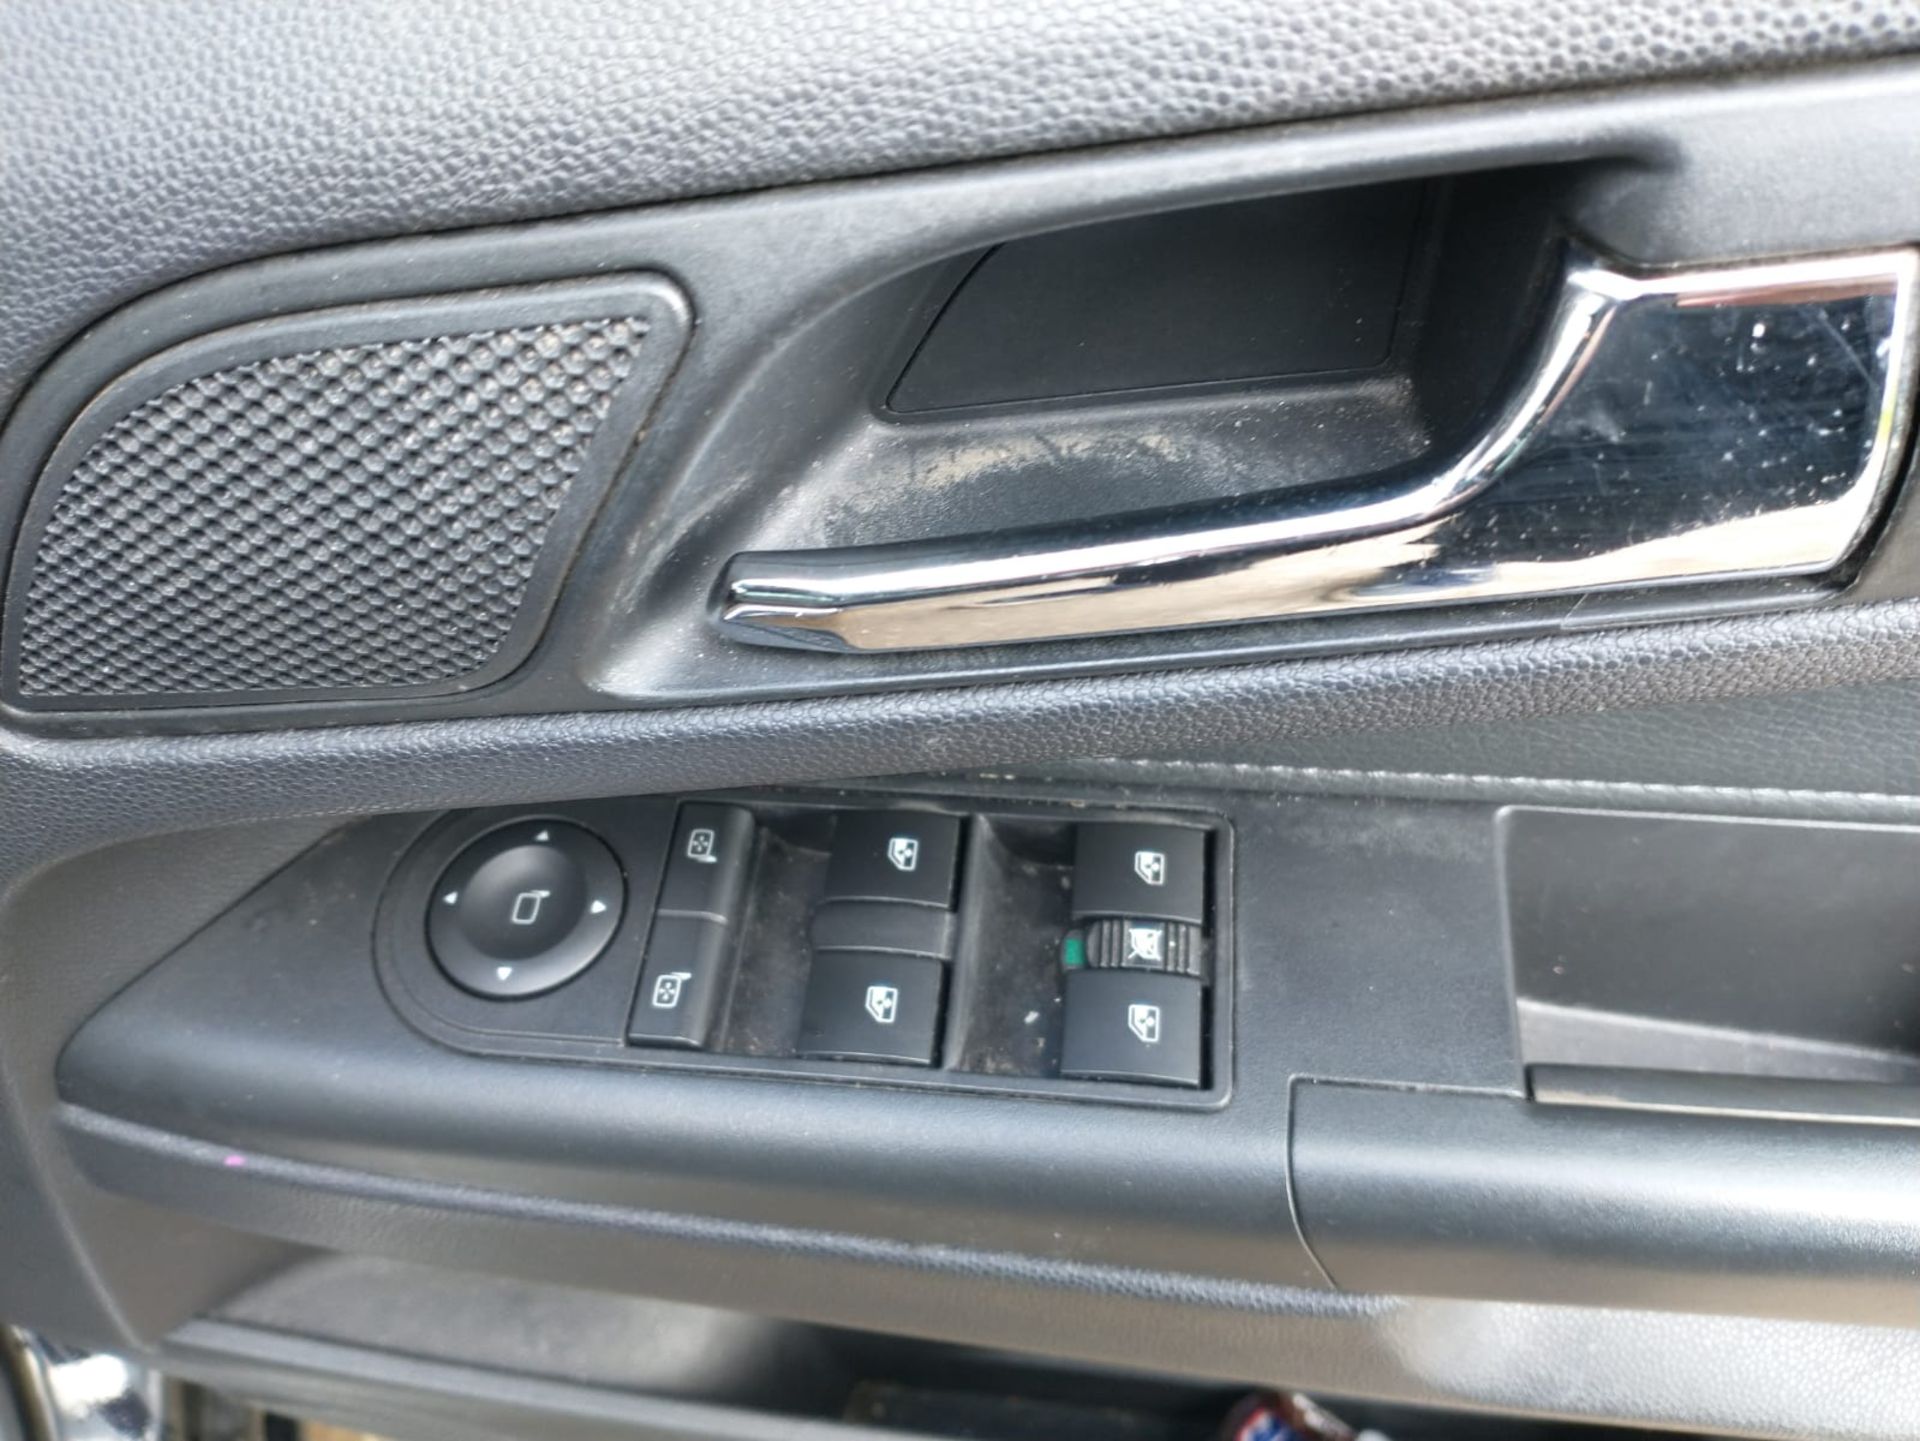 2011 Vauxhall Zafira Elite Cdti 1.7 5Dr MPV - Image 3 of 16